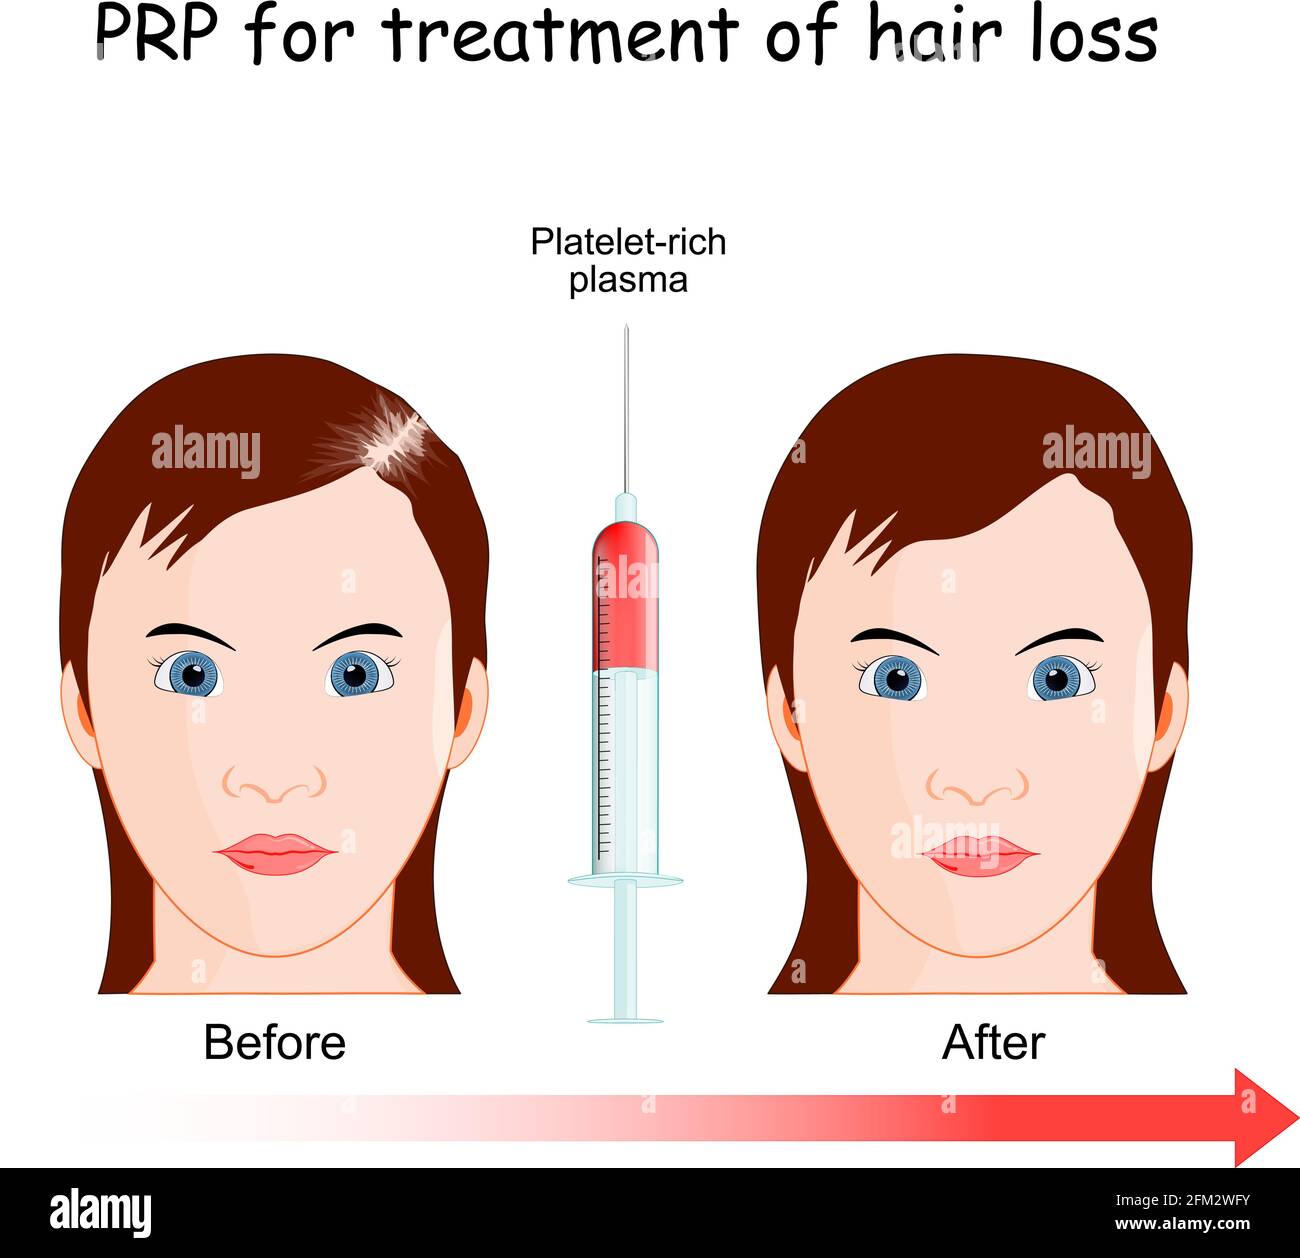 Plasma riche en plaquettes. Procédure PRP pour le traitement de la perte de cheveux. Femme avec alopécie avant et après l'injection. Illustration de Vecteur